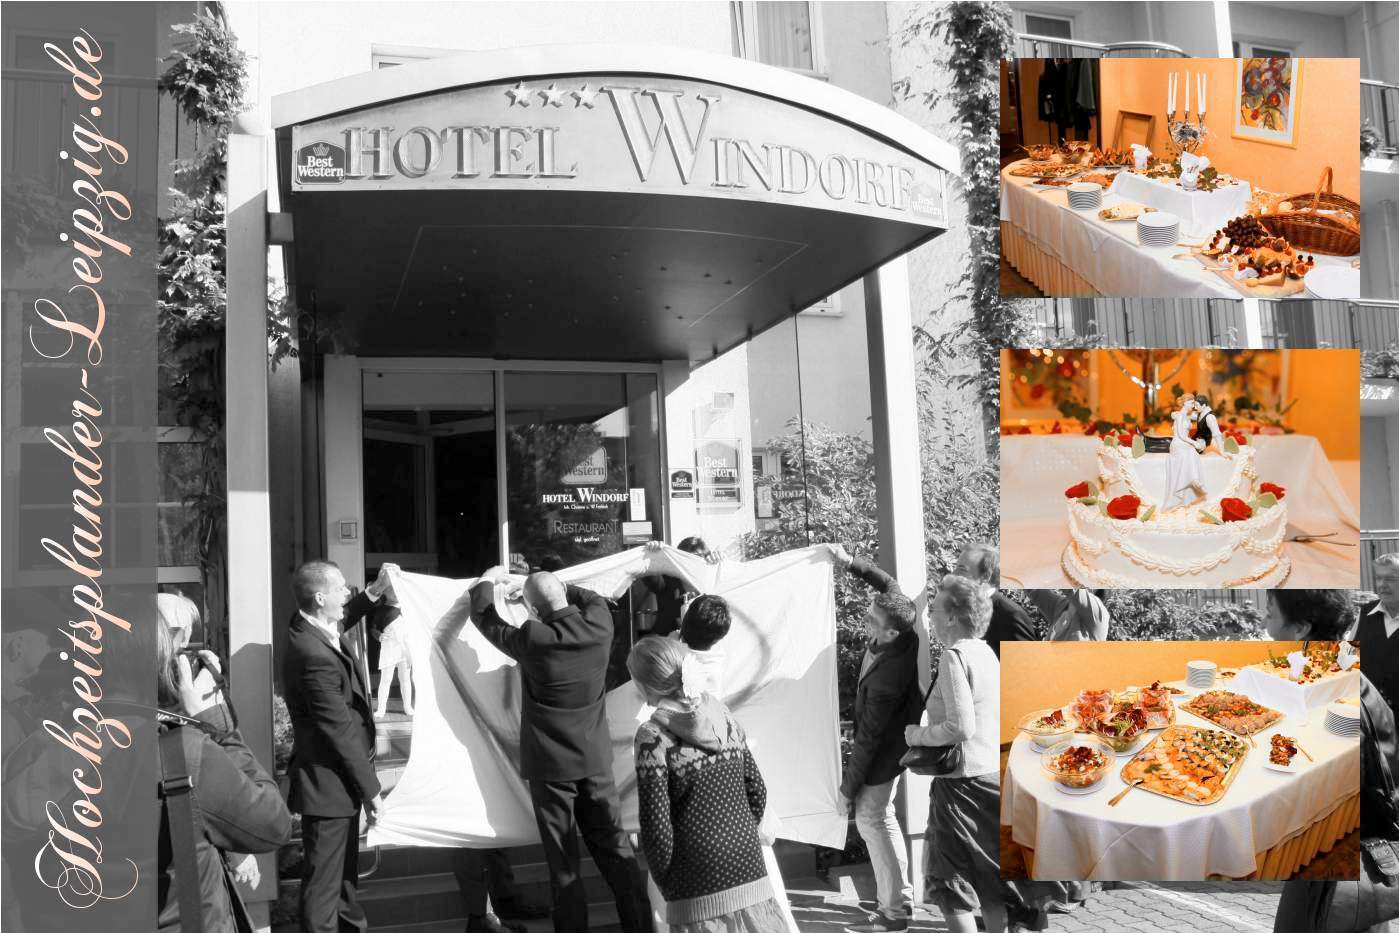 Hochzeitslocation Best Western Hotel Windorf Leipzig (Restaurant + Hotel fr Hochzeitsfeier)